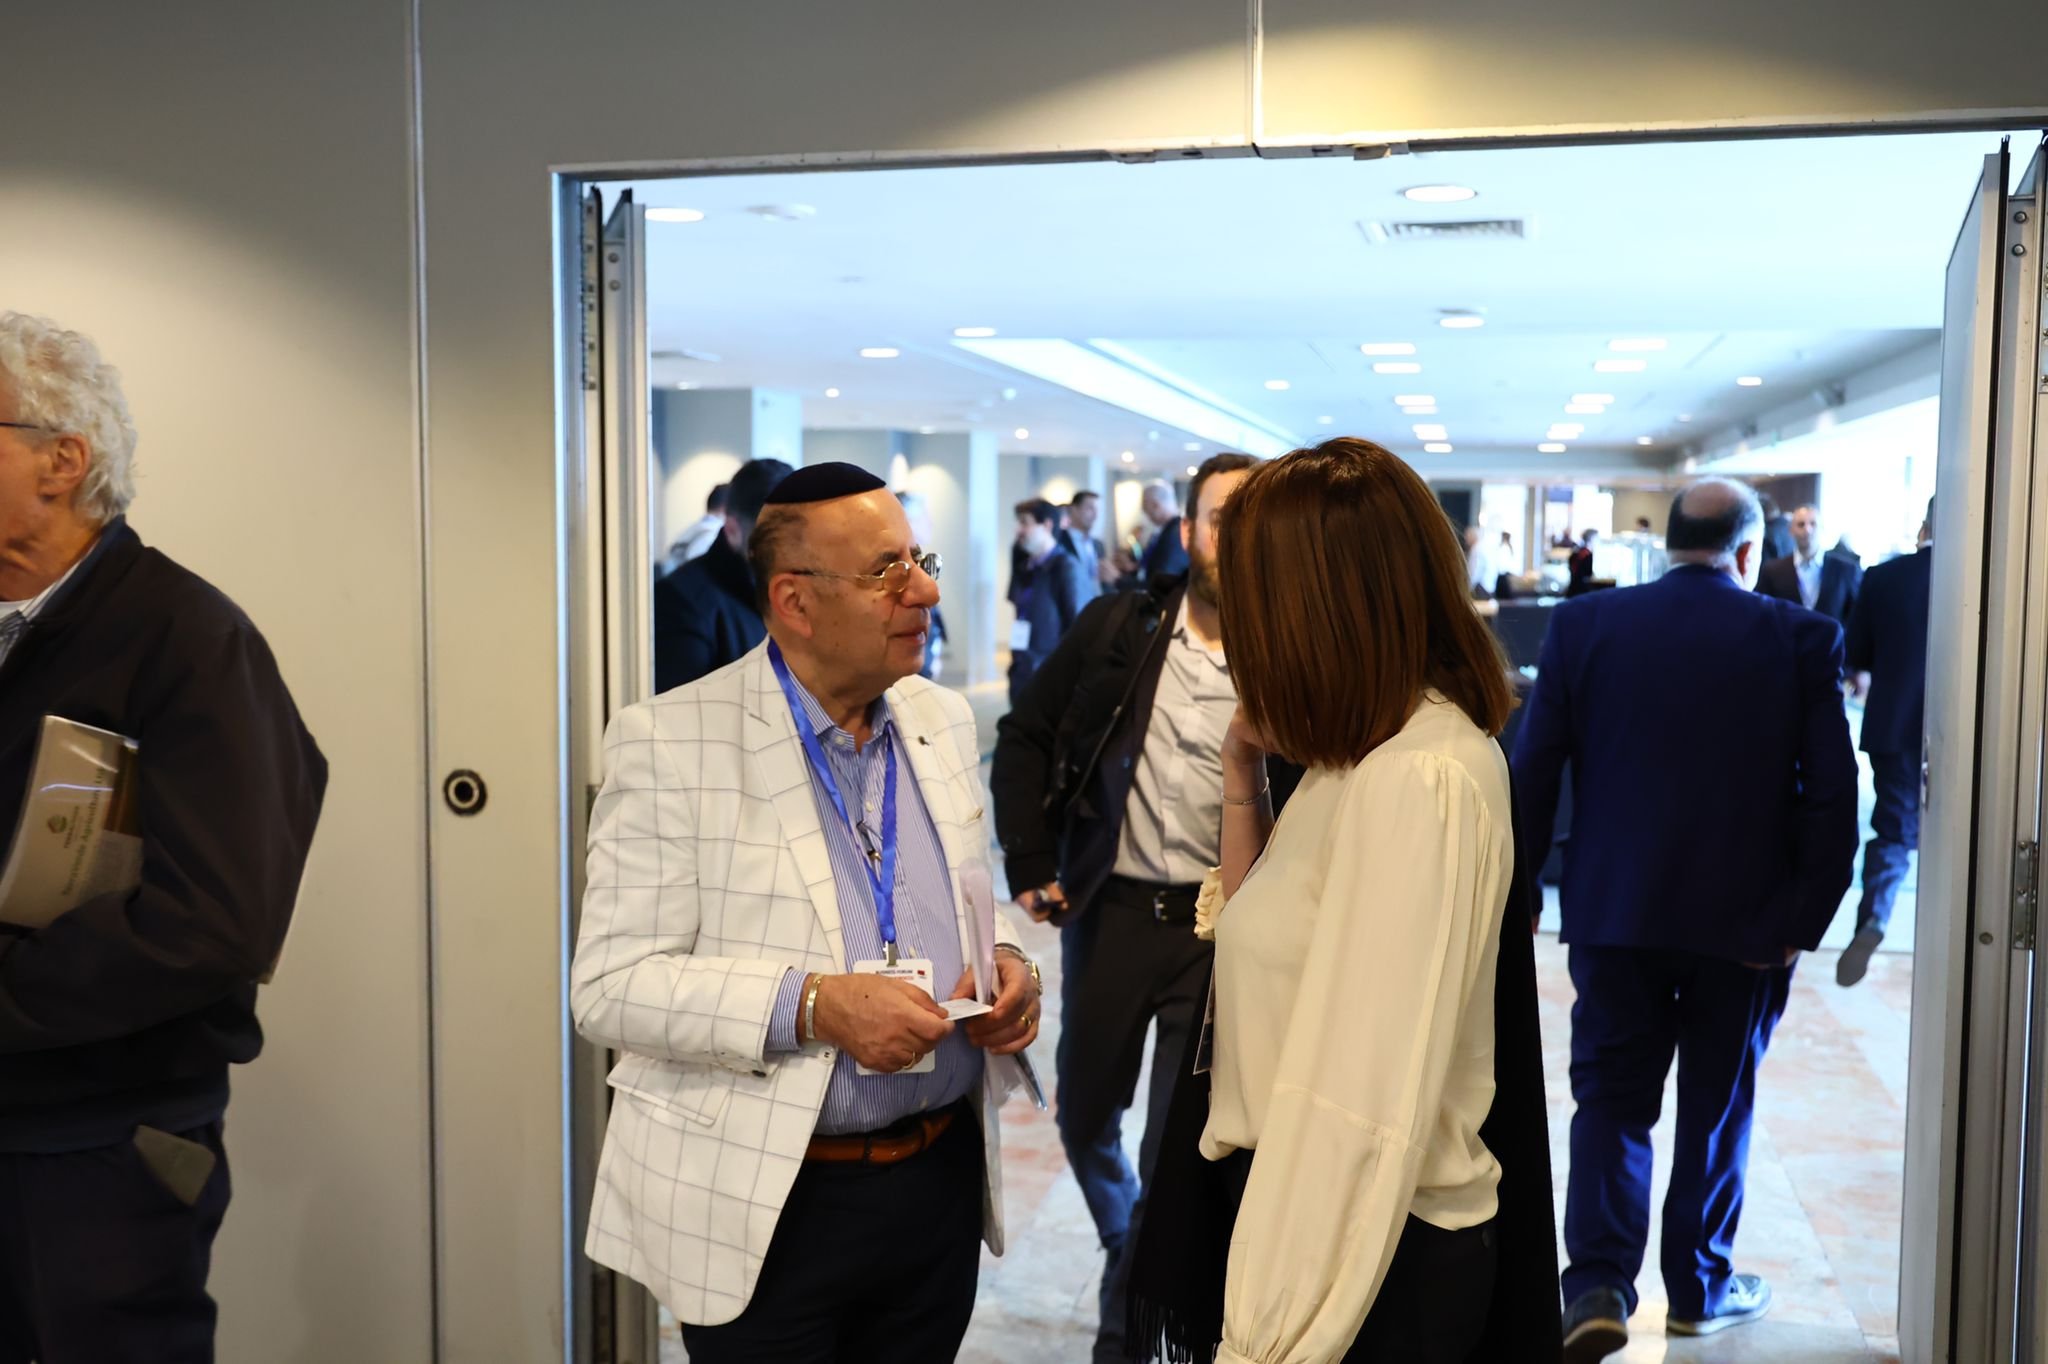 خلال لقاء بين رجال اعمال إسرائيليين ومغاربة - الوزير فريج: أقمنا منتدى لرجال الأعمال لبحث سبل التعاون الاقتصادي بين البلدين-7